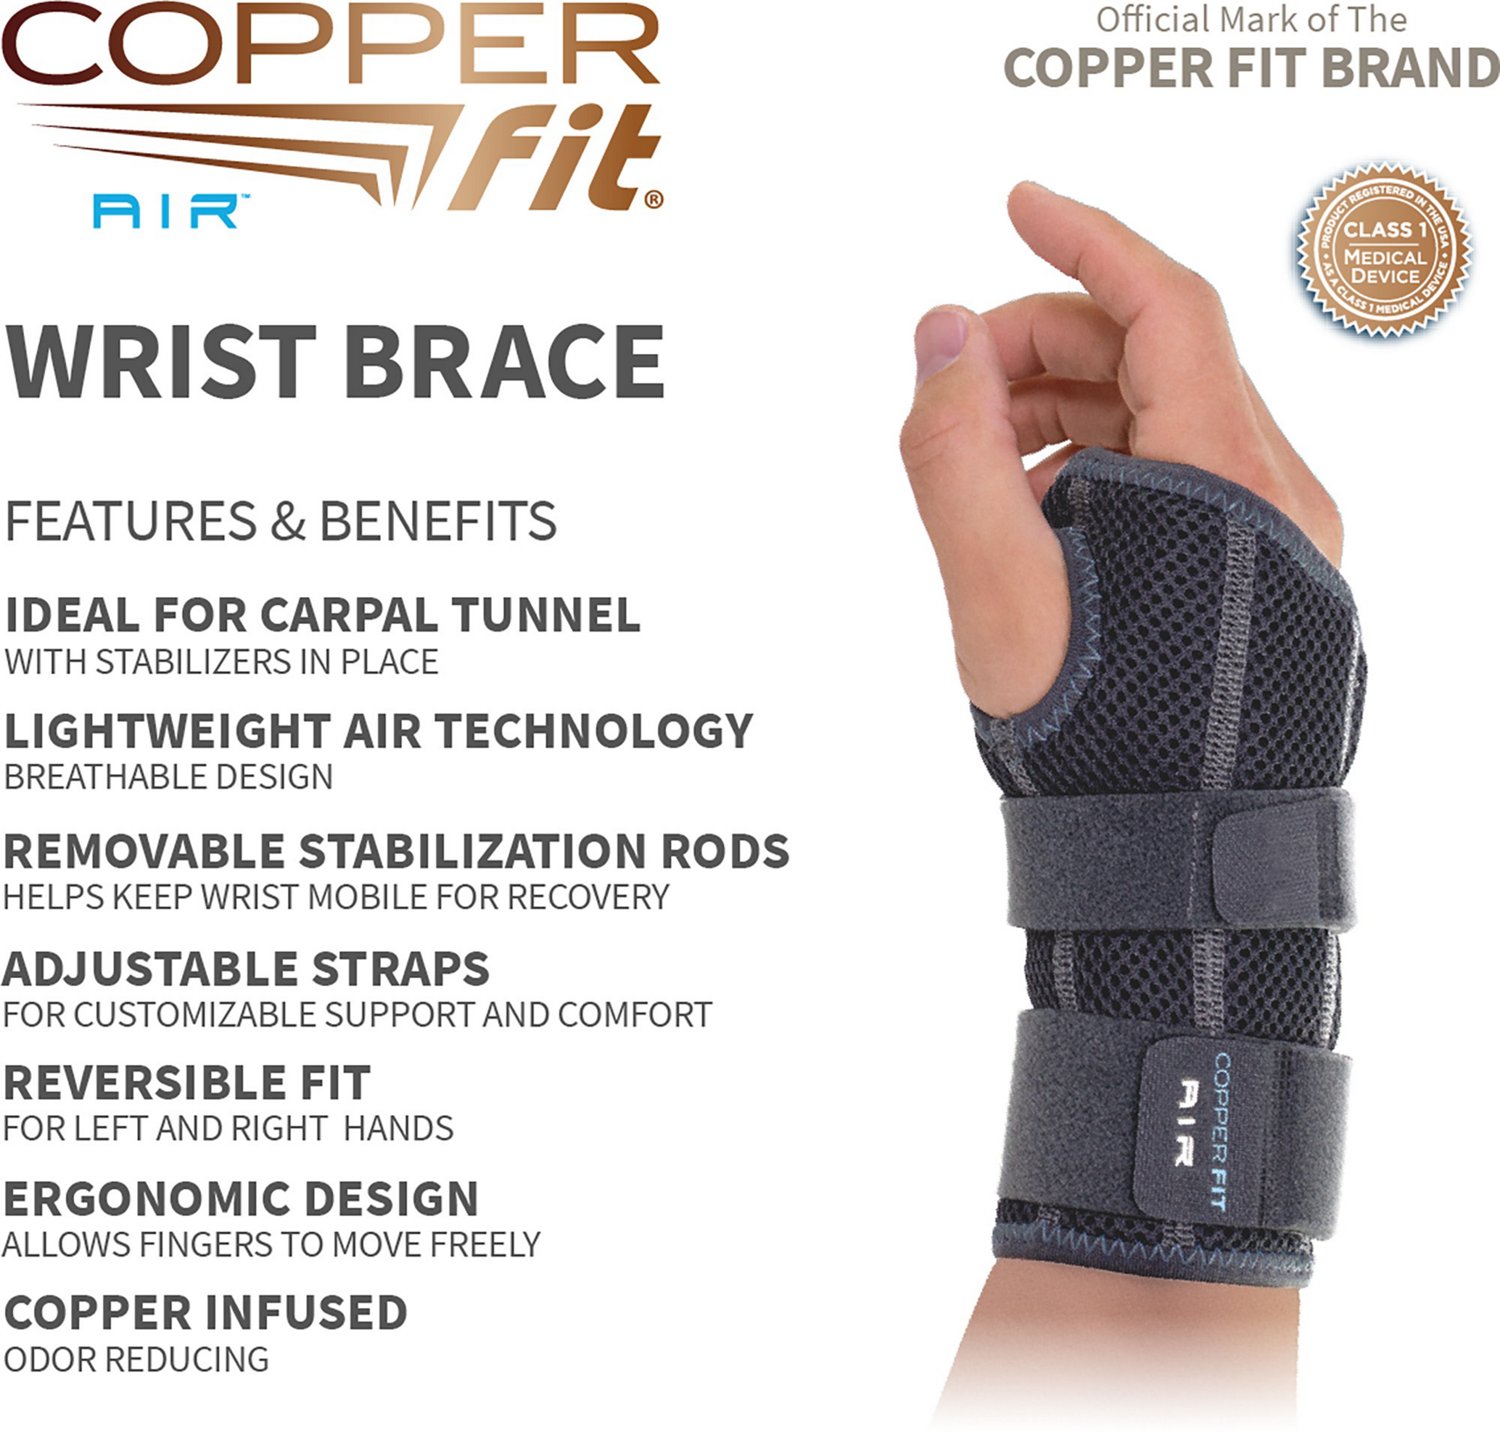 Copper Fit Air Wrist Brace